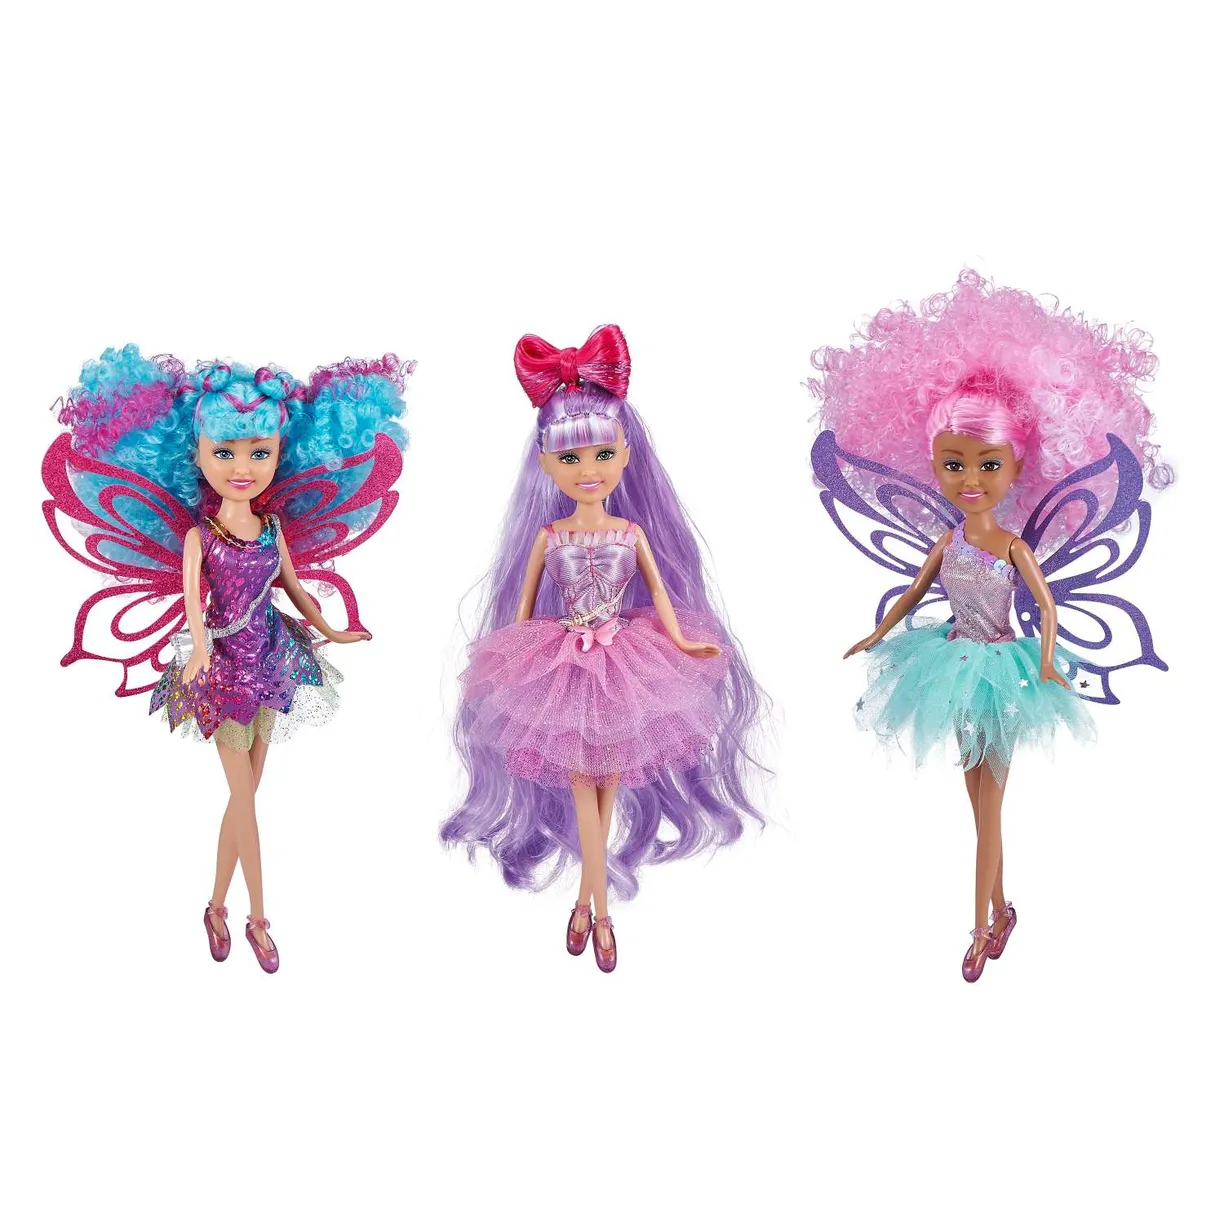 Набор игровой Sparkle Girlz Волосы мечты в ассортименте кеды для куклы и набор по созданию сумочки